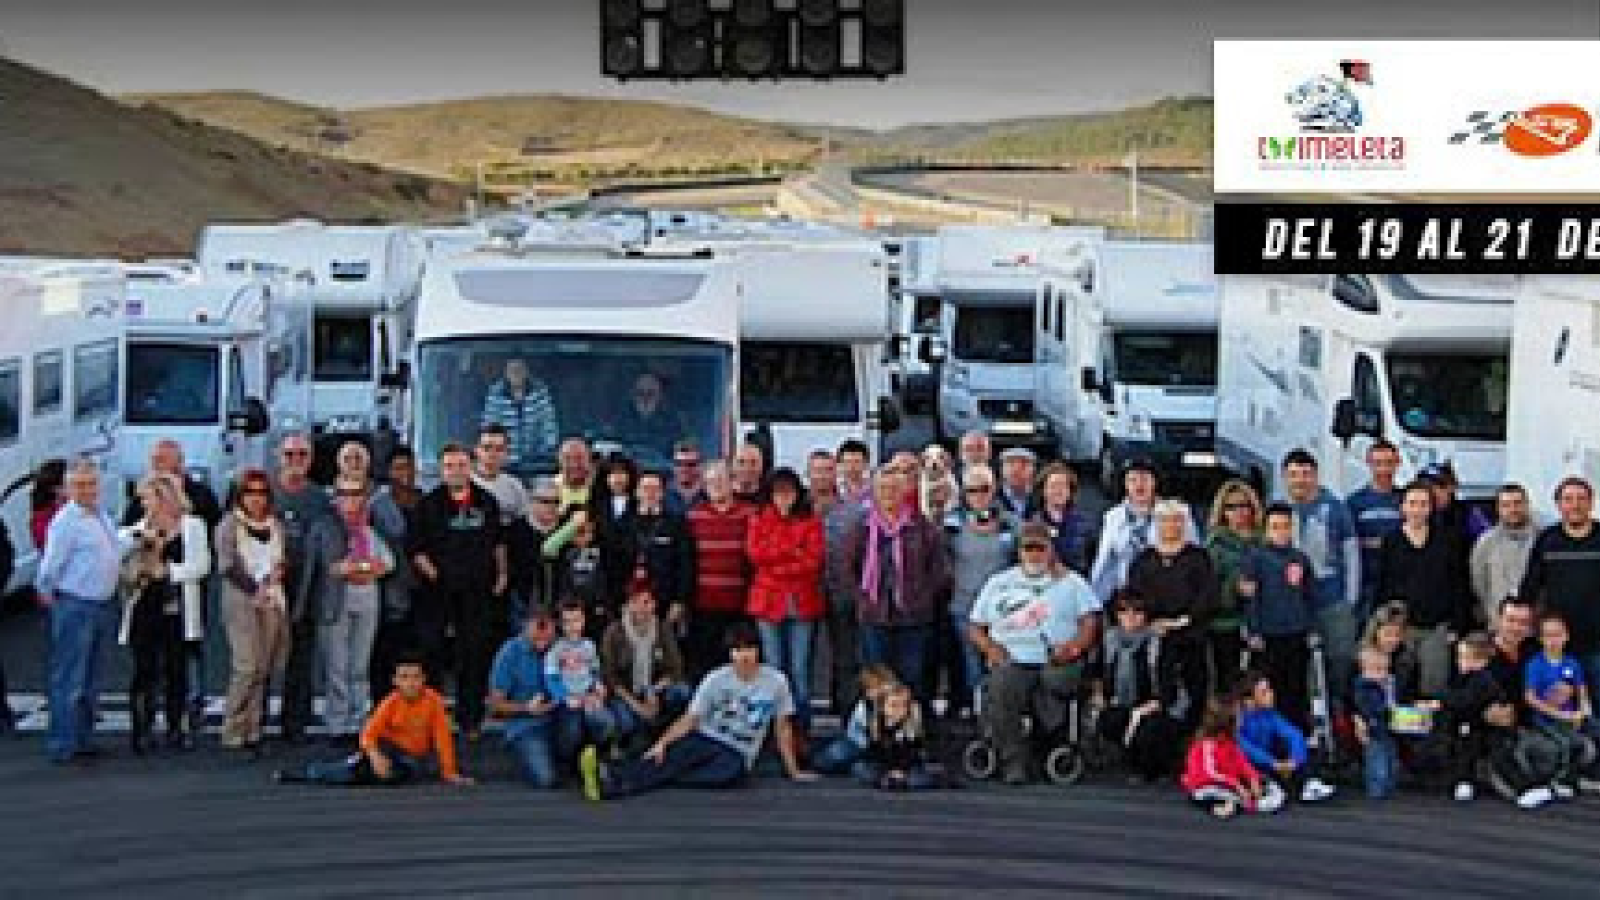 Concentración de autocaravanas y campers para batir el "Guinness World Records 2017" en el circuito de Navarra